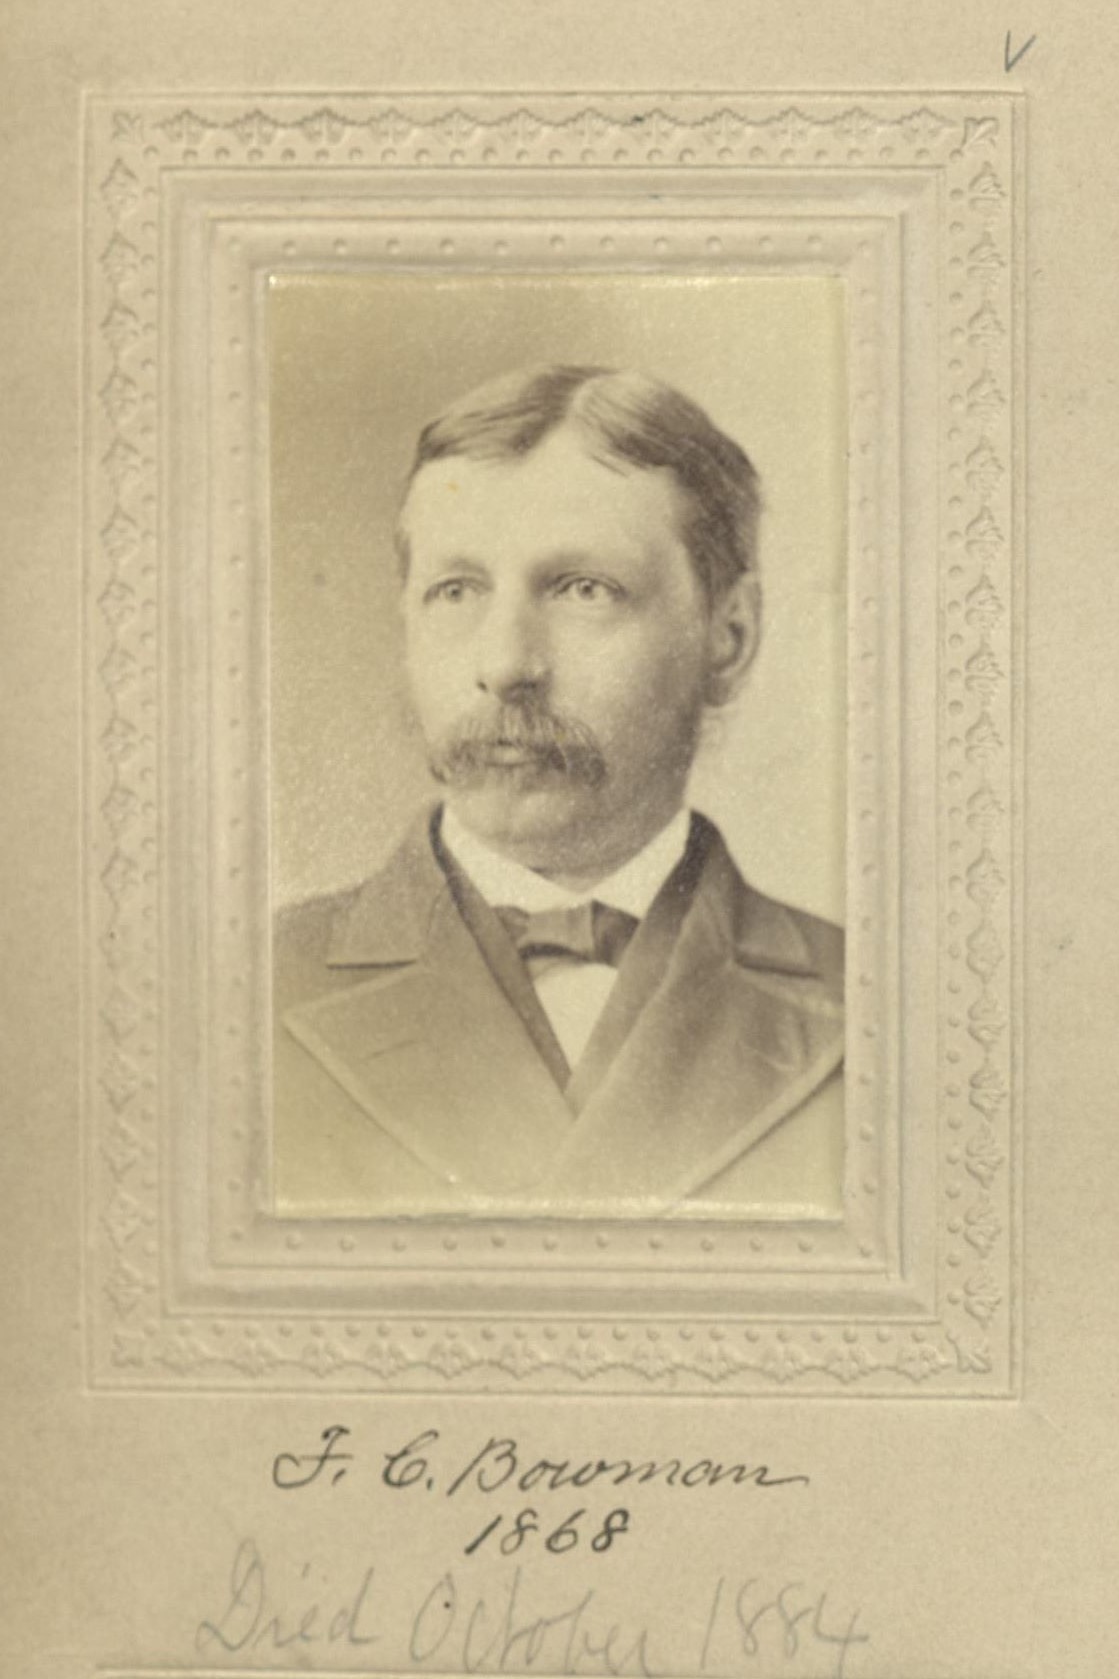 Member portrait of Francis C. Bowman